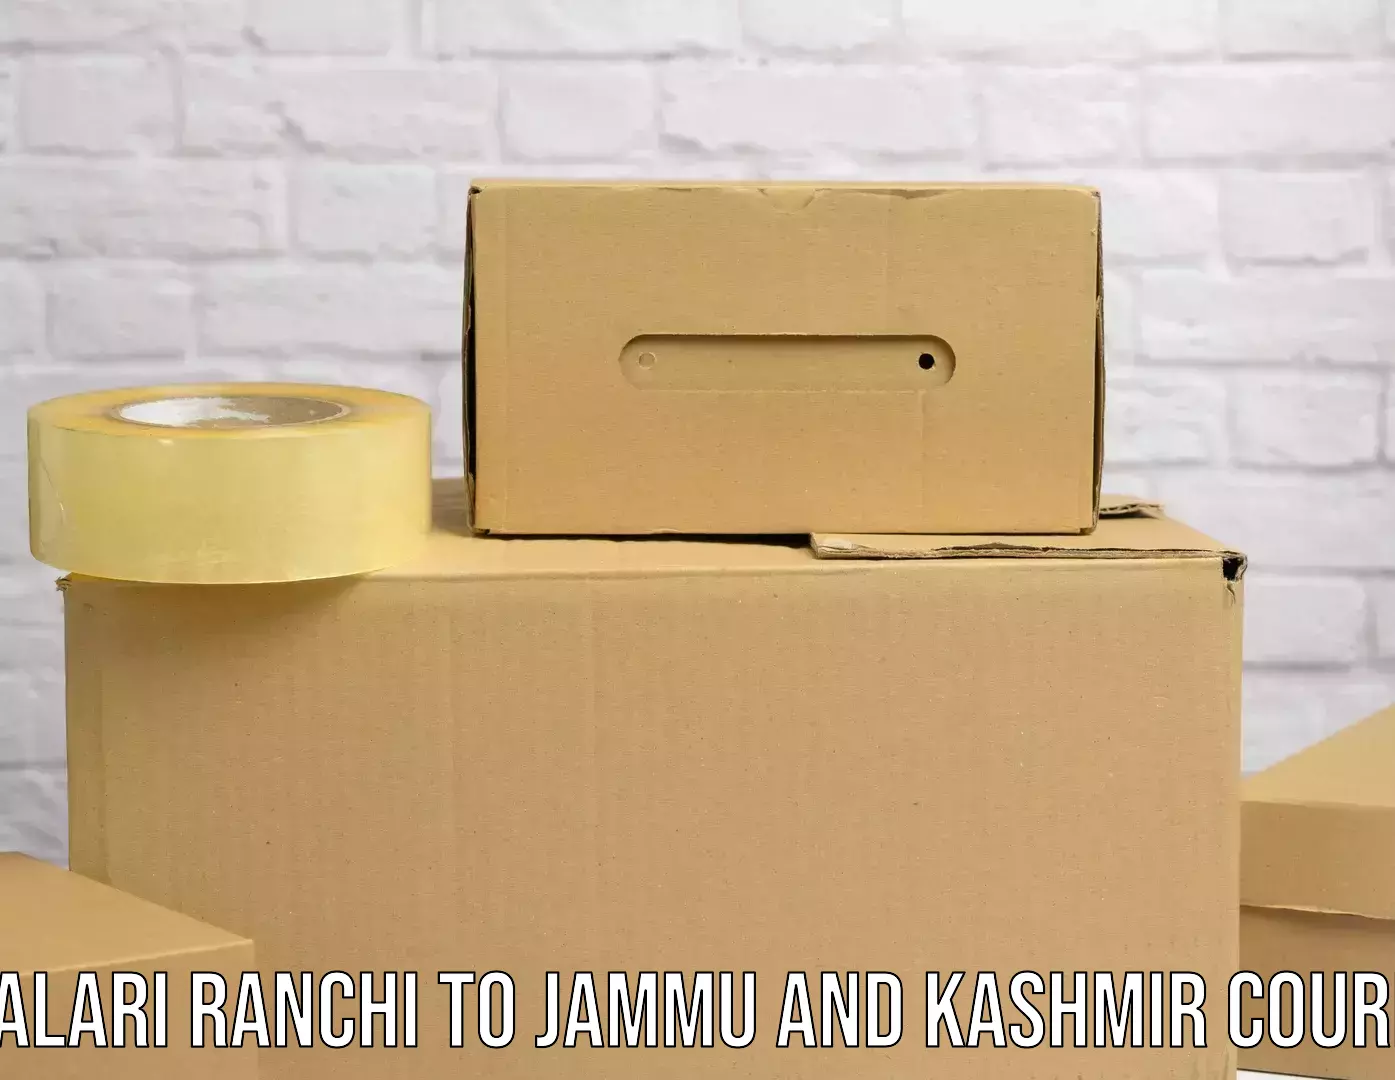 Scalable shipping solutions Khalari Ranchi to University of Kashmir Srinagar